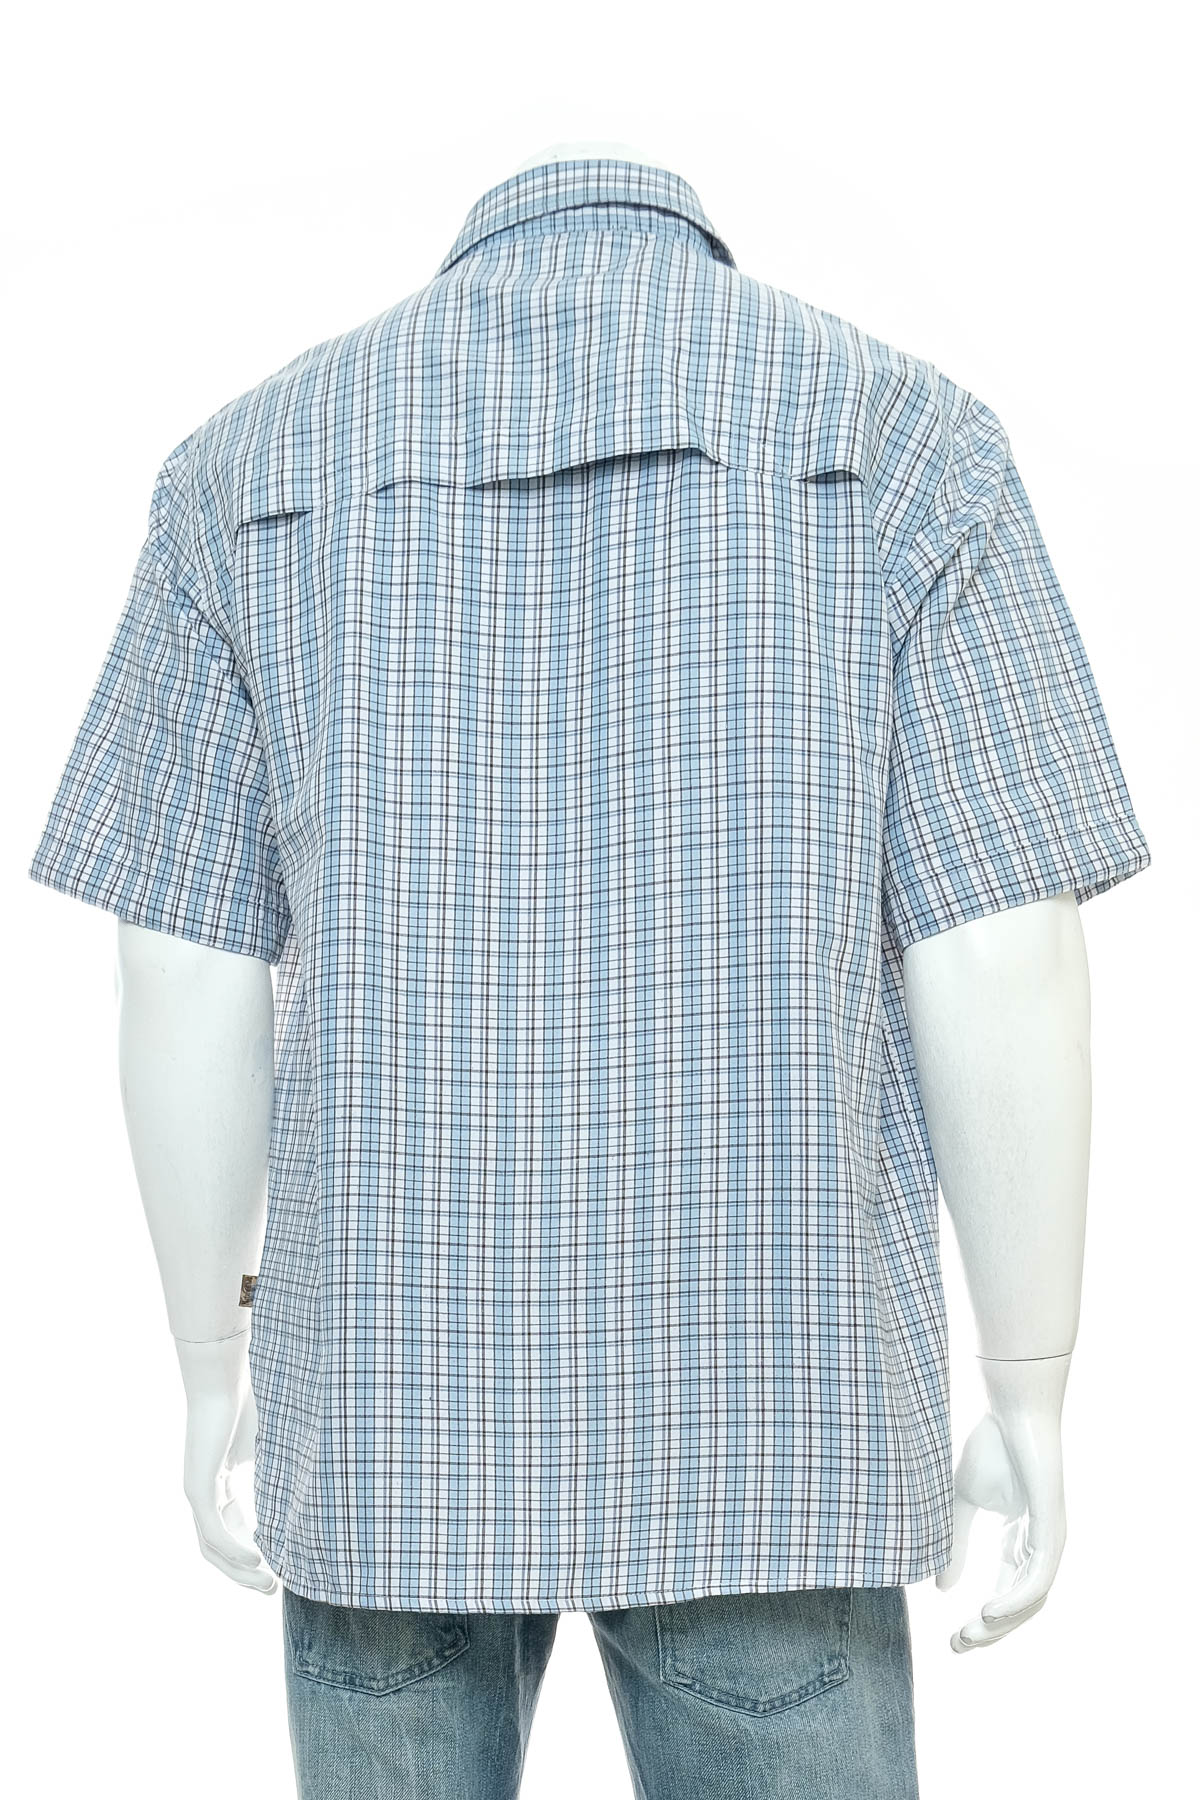 Ανδρικό πουκάμισο - TCM - 1